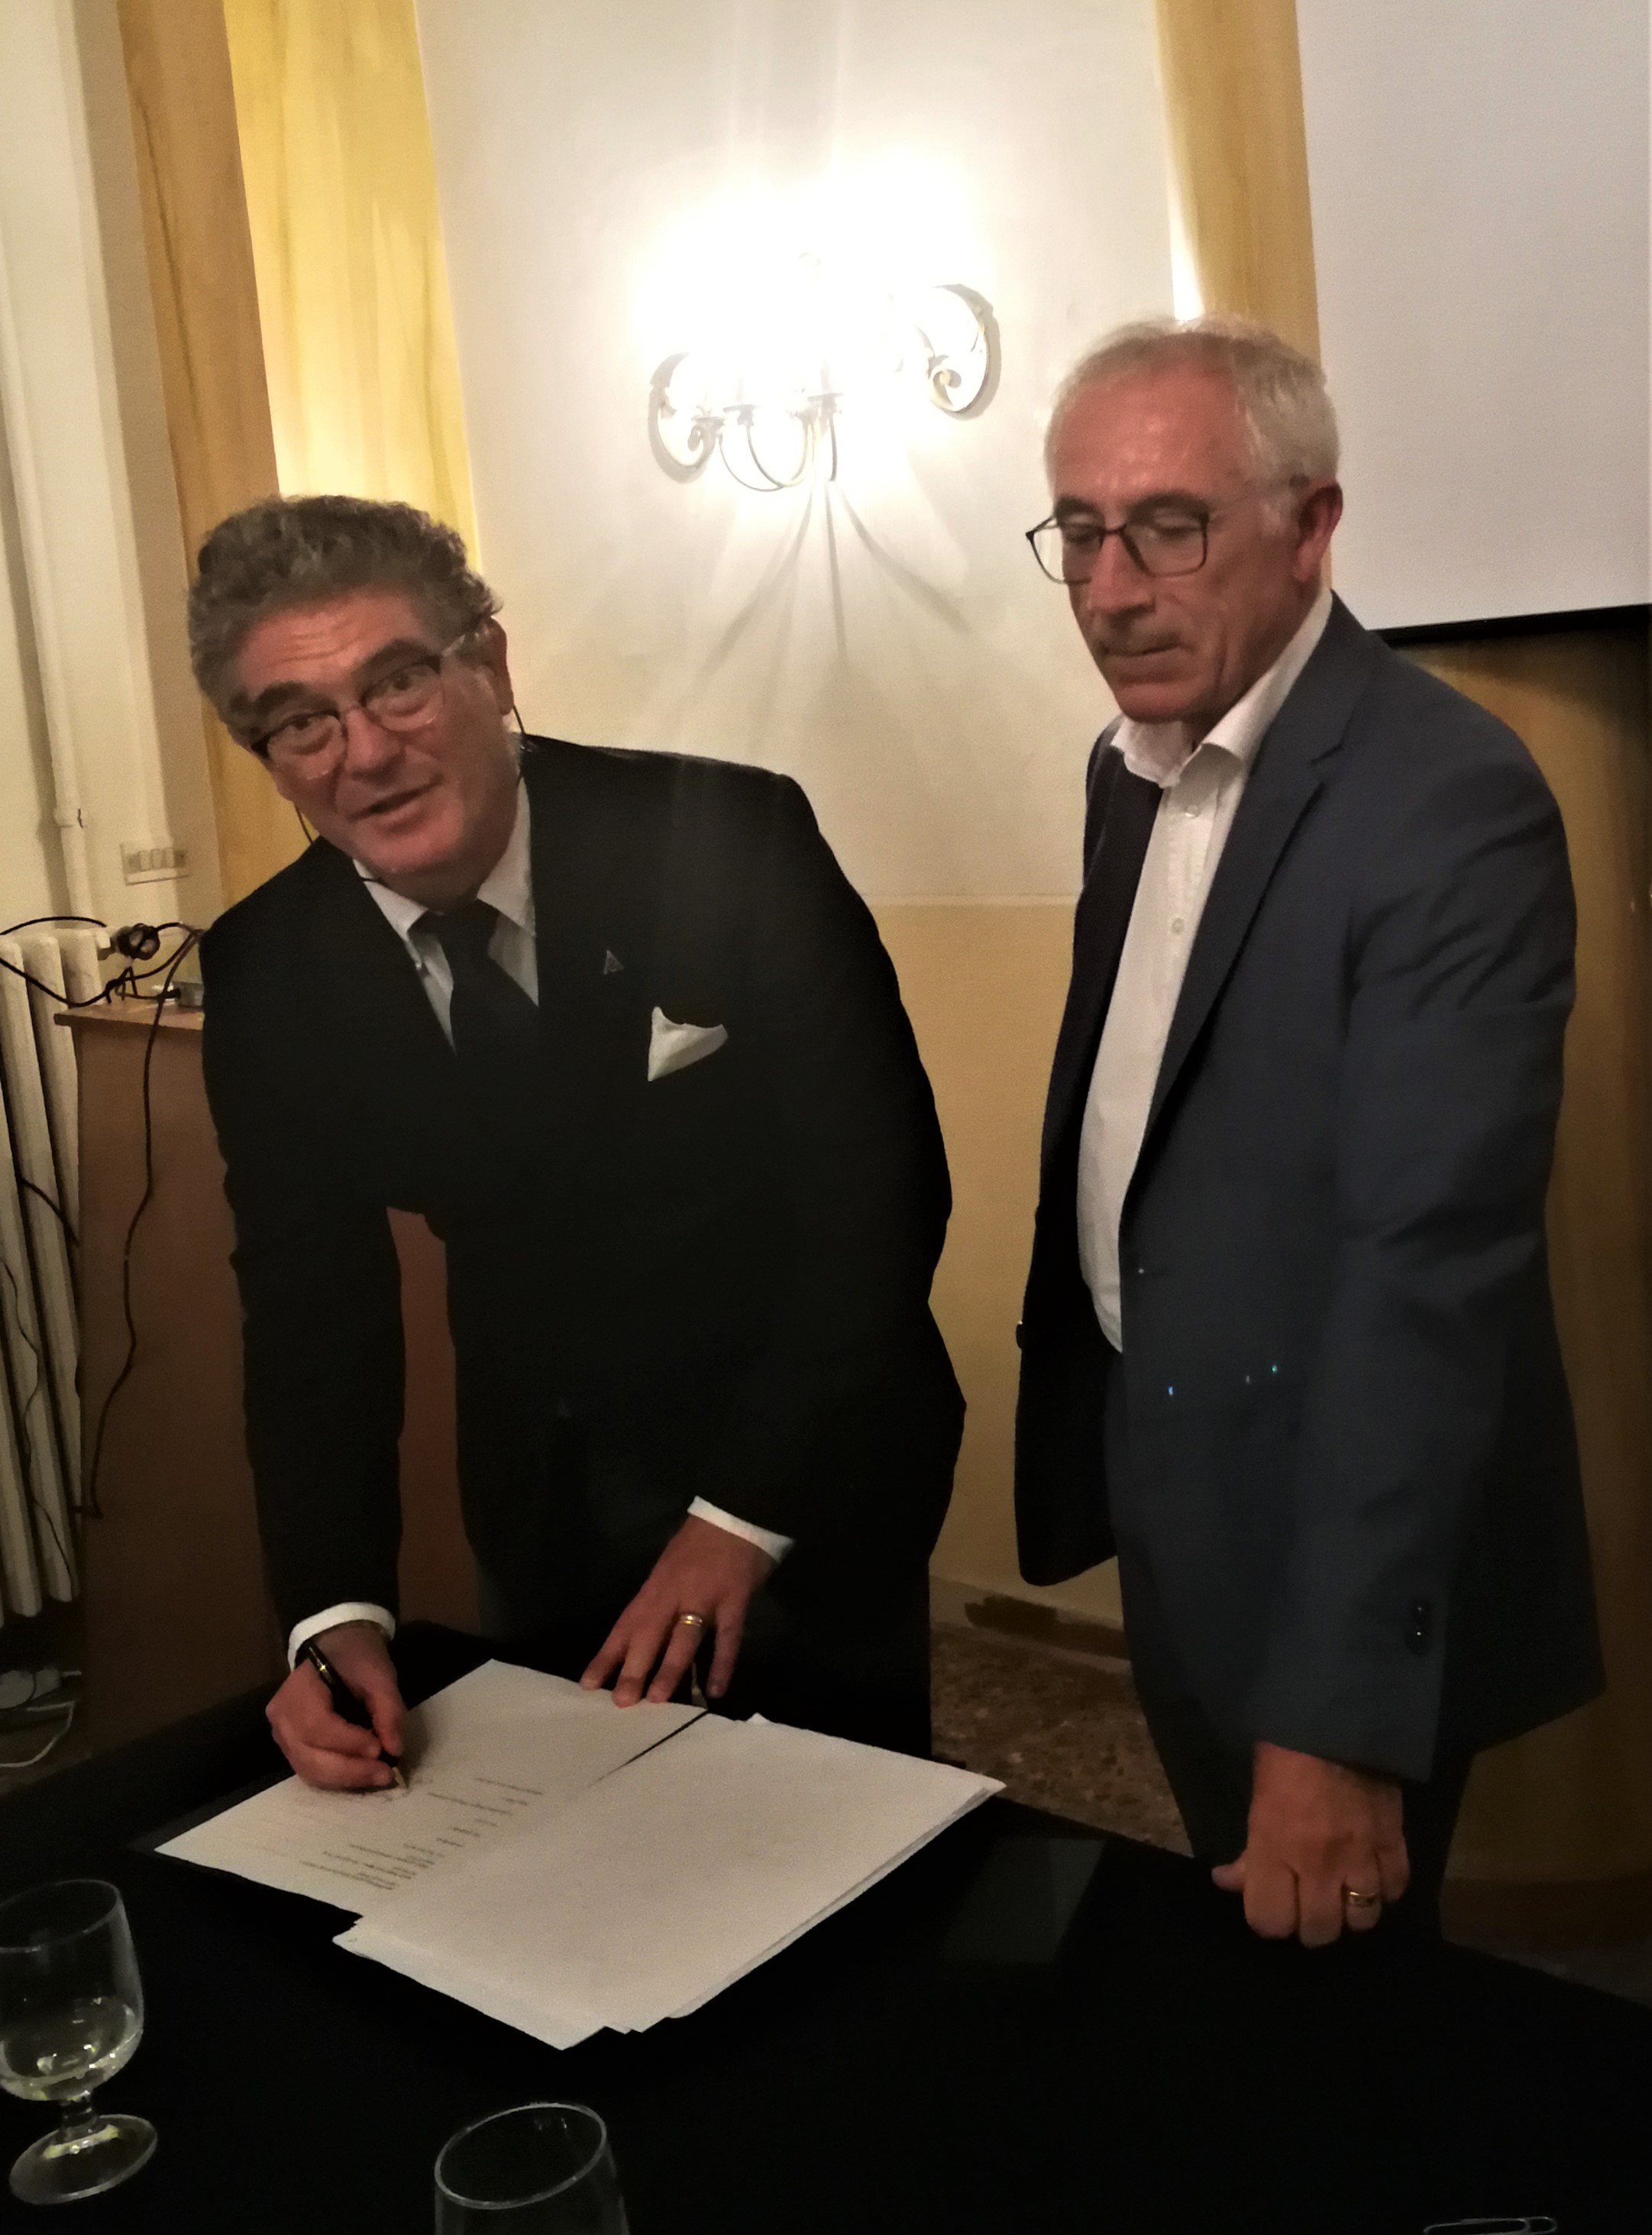 Il dottore Pasquale Longobardi, Presidente della SIMSI (Società Italiana Medicina Subacquea e Iperbarica) firma il protocollo del distretto per la subacquea ligure